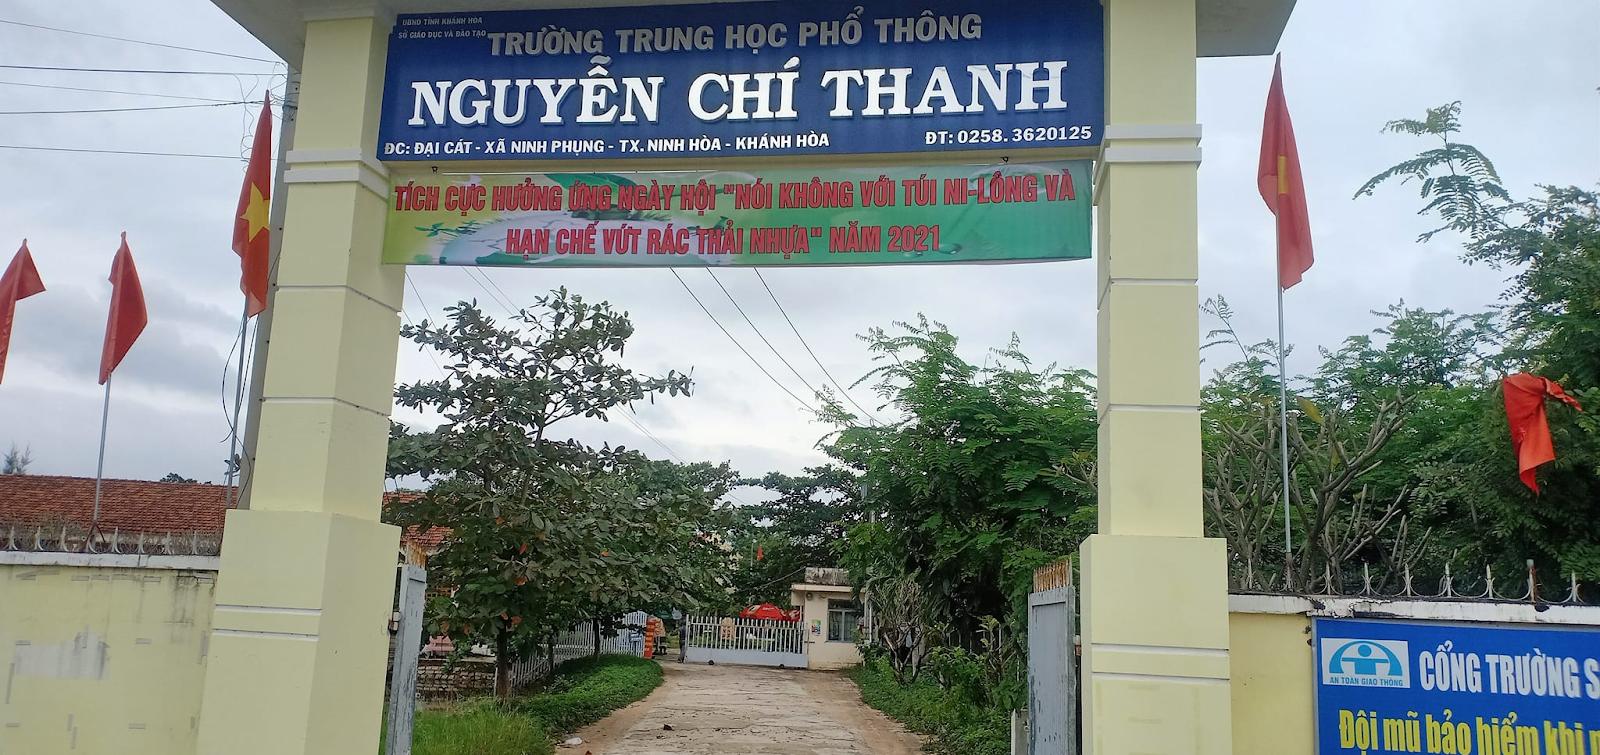 Đánh Giá Trường THPT Nguyễn Chí Thanh Khánh Hòa Có Tốt Không?